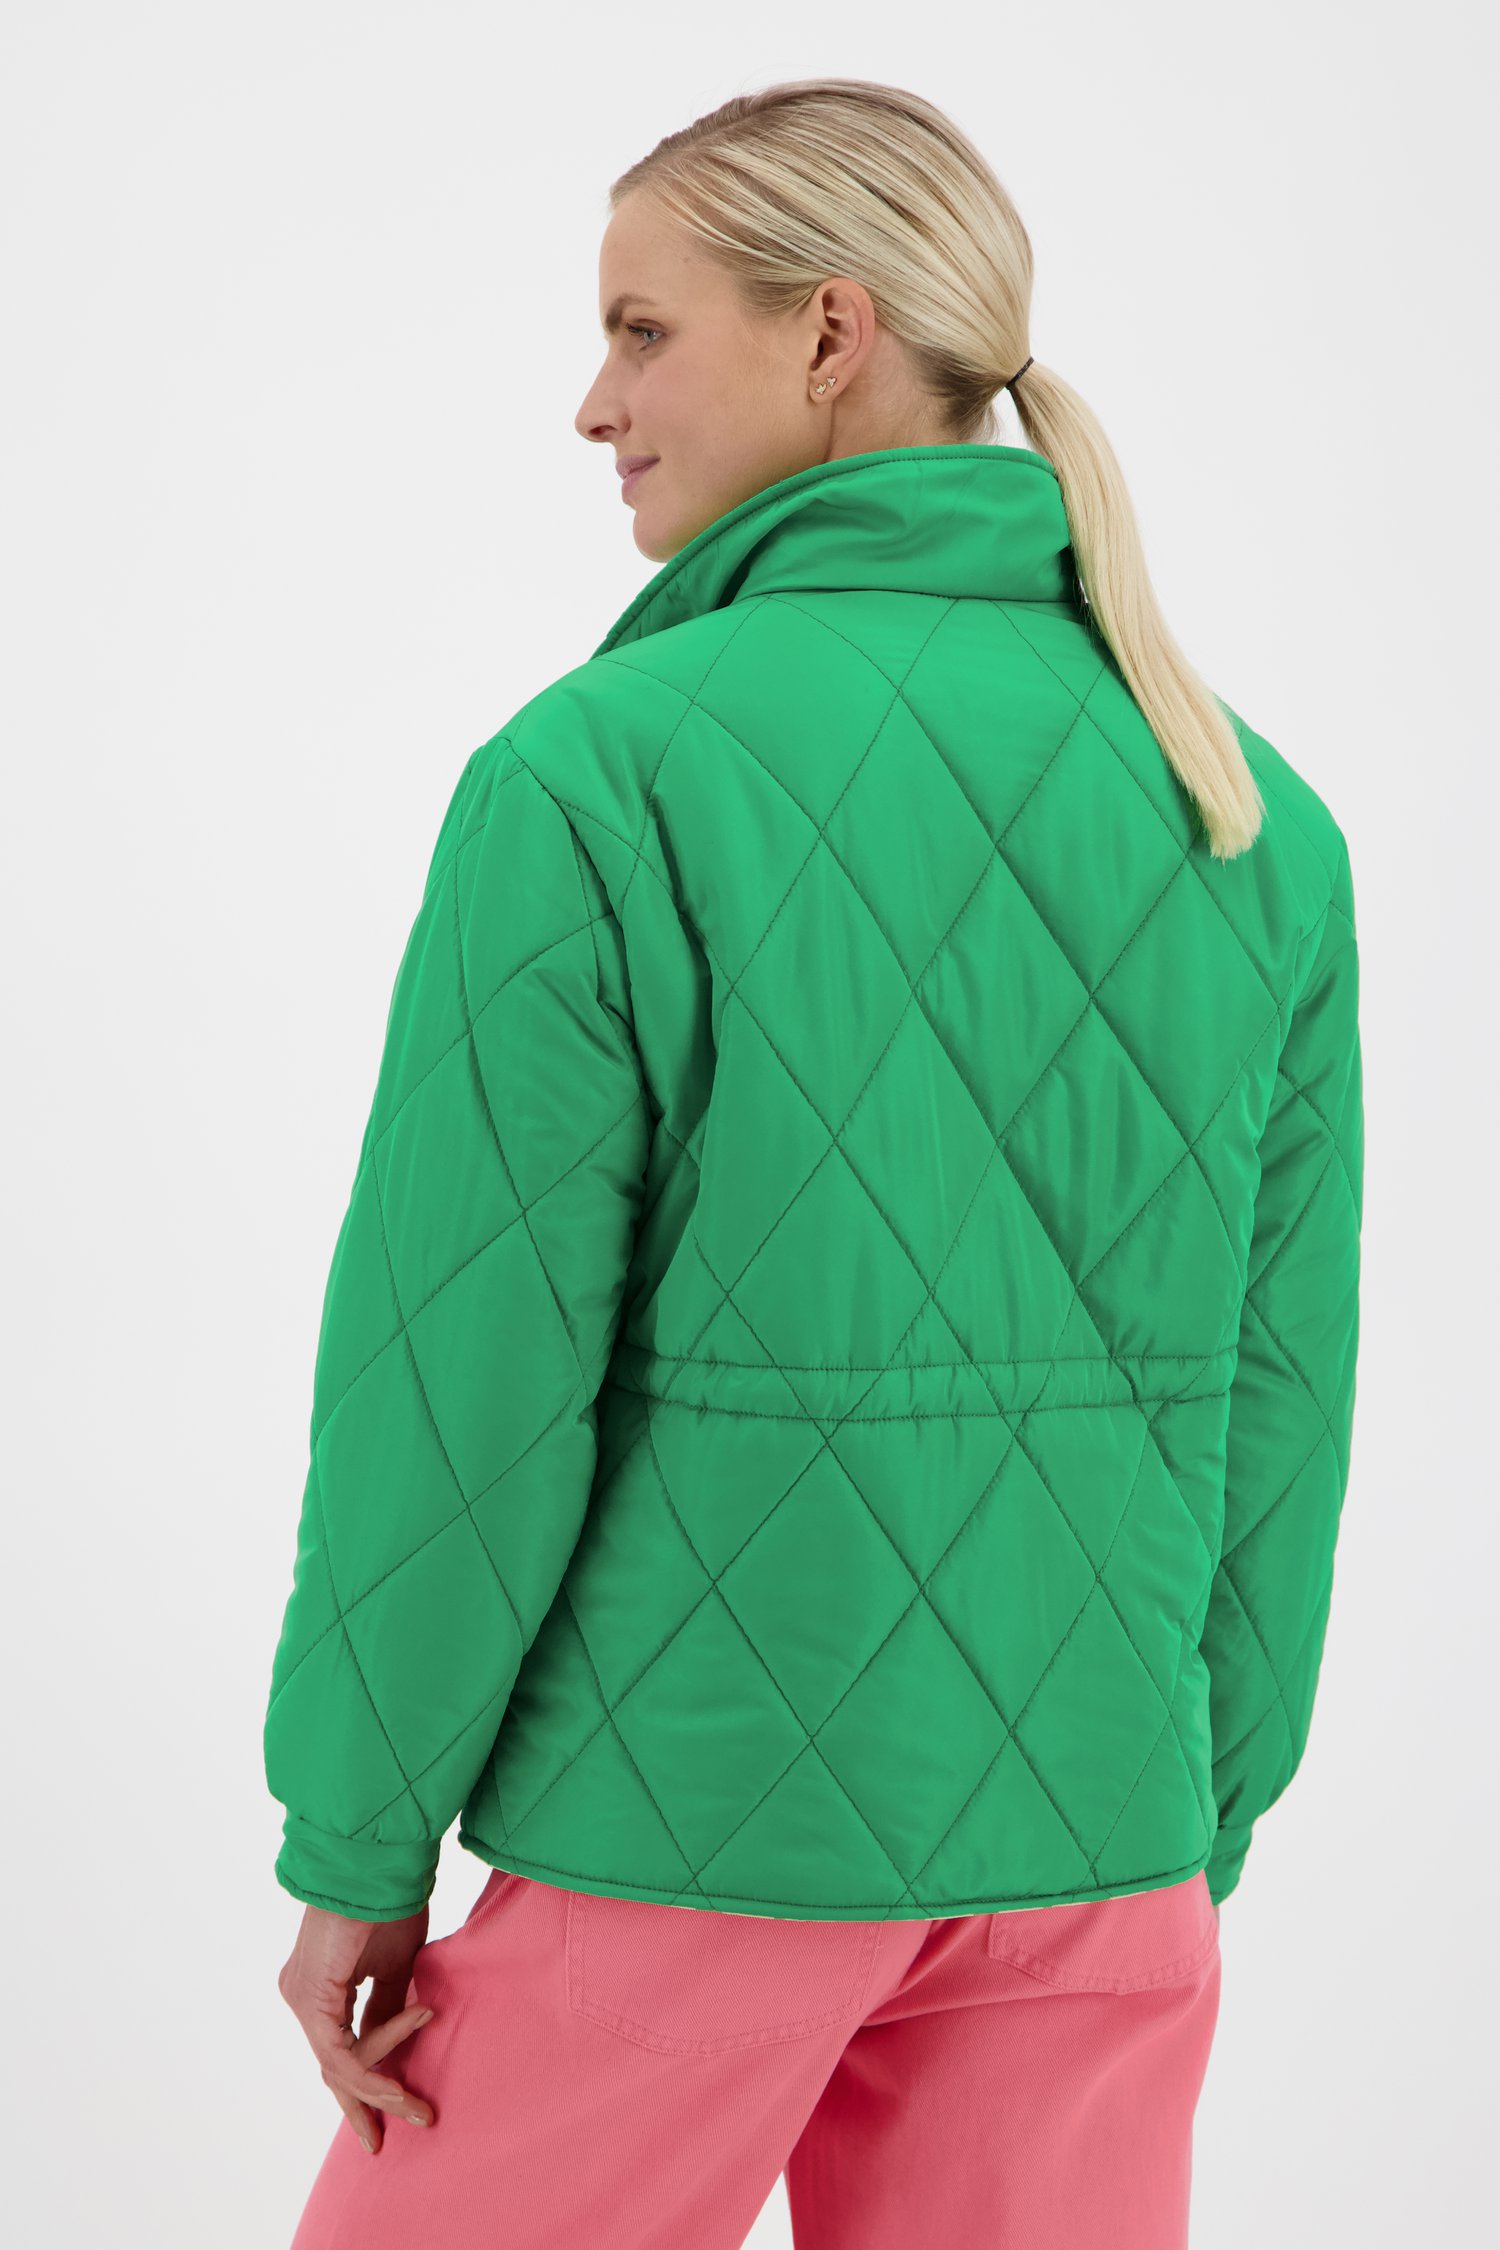 Groen gewatteerd jasje van JDY voor Dames